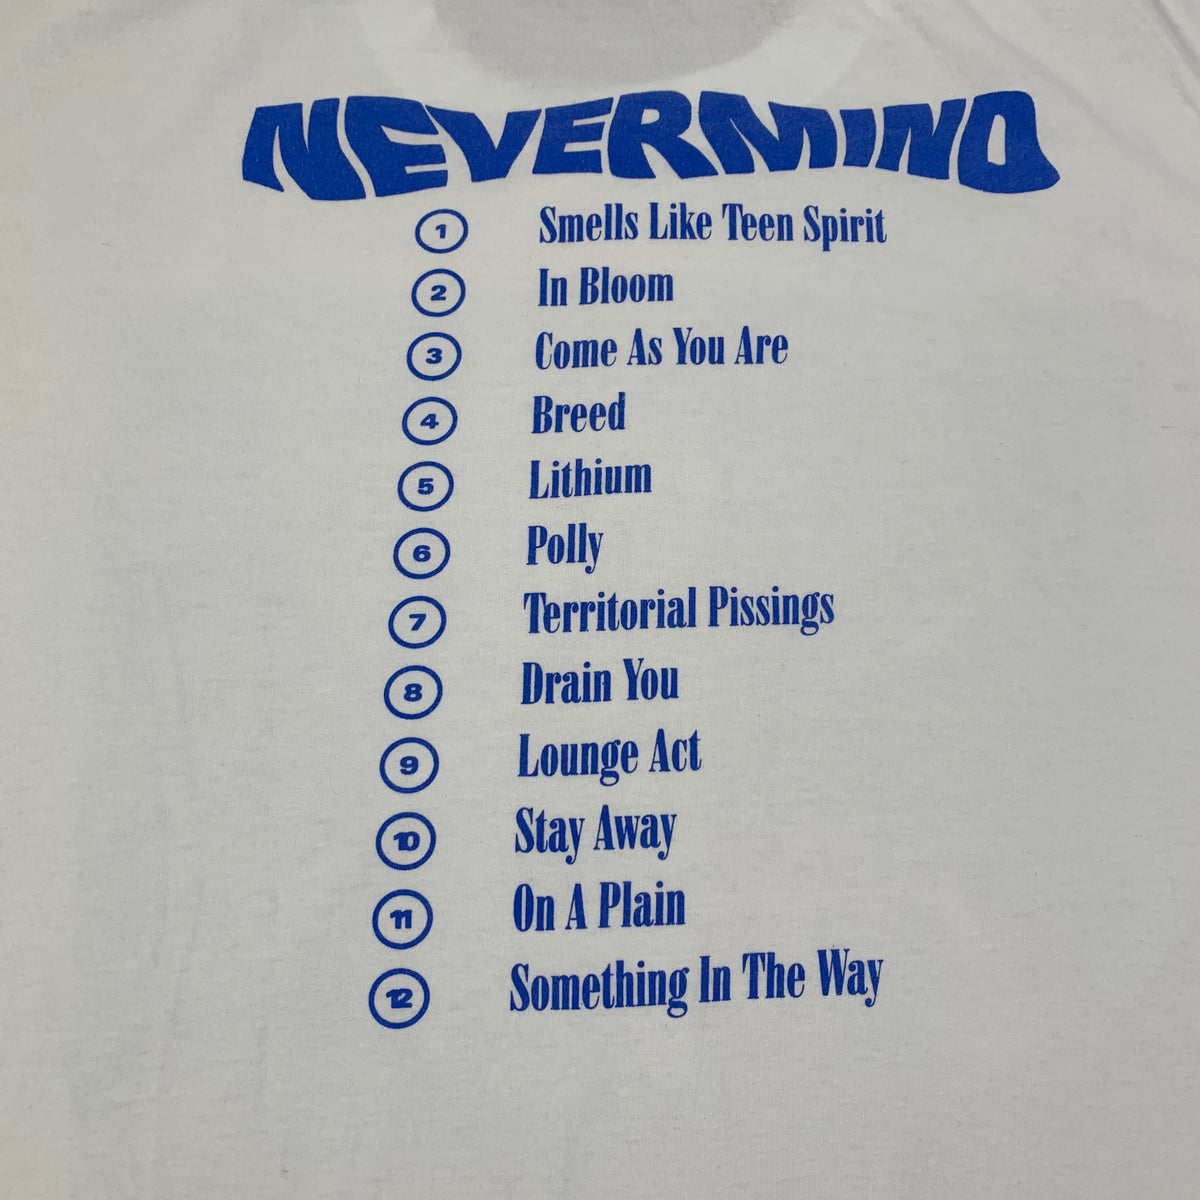 Vintage Nirvana &quot;Nevermind&quot; T-Shirt - jointcustodydc